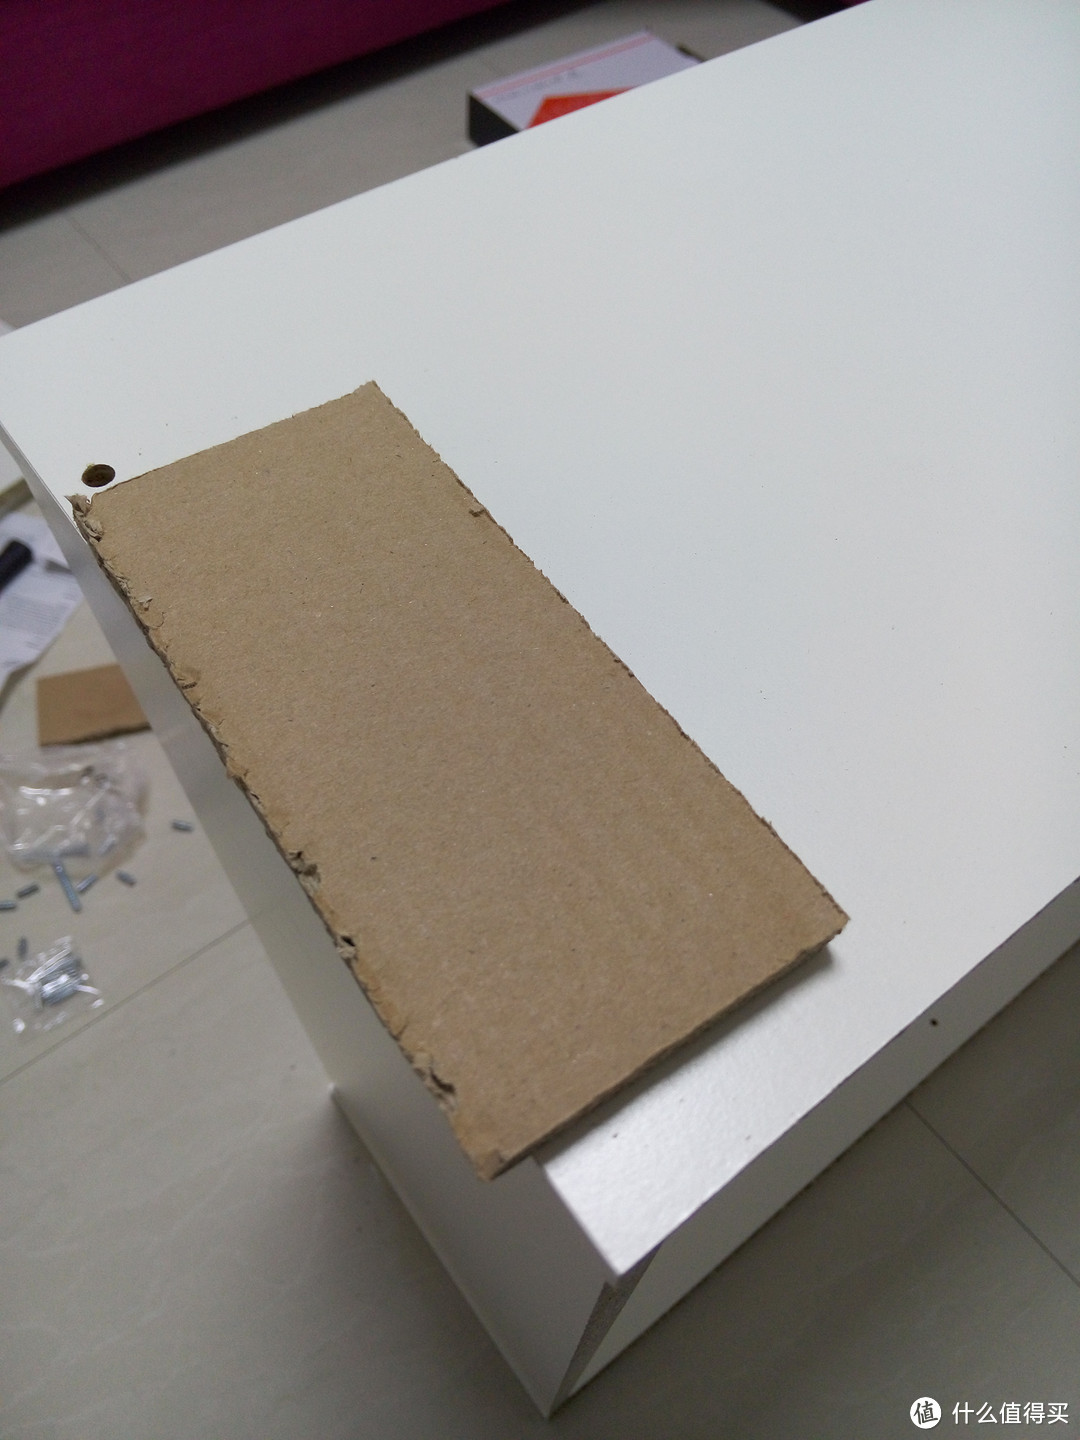 垫上包装箱中的纸板轻轻敲打下板材，保证安装到位。